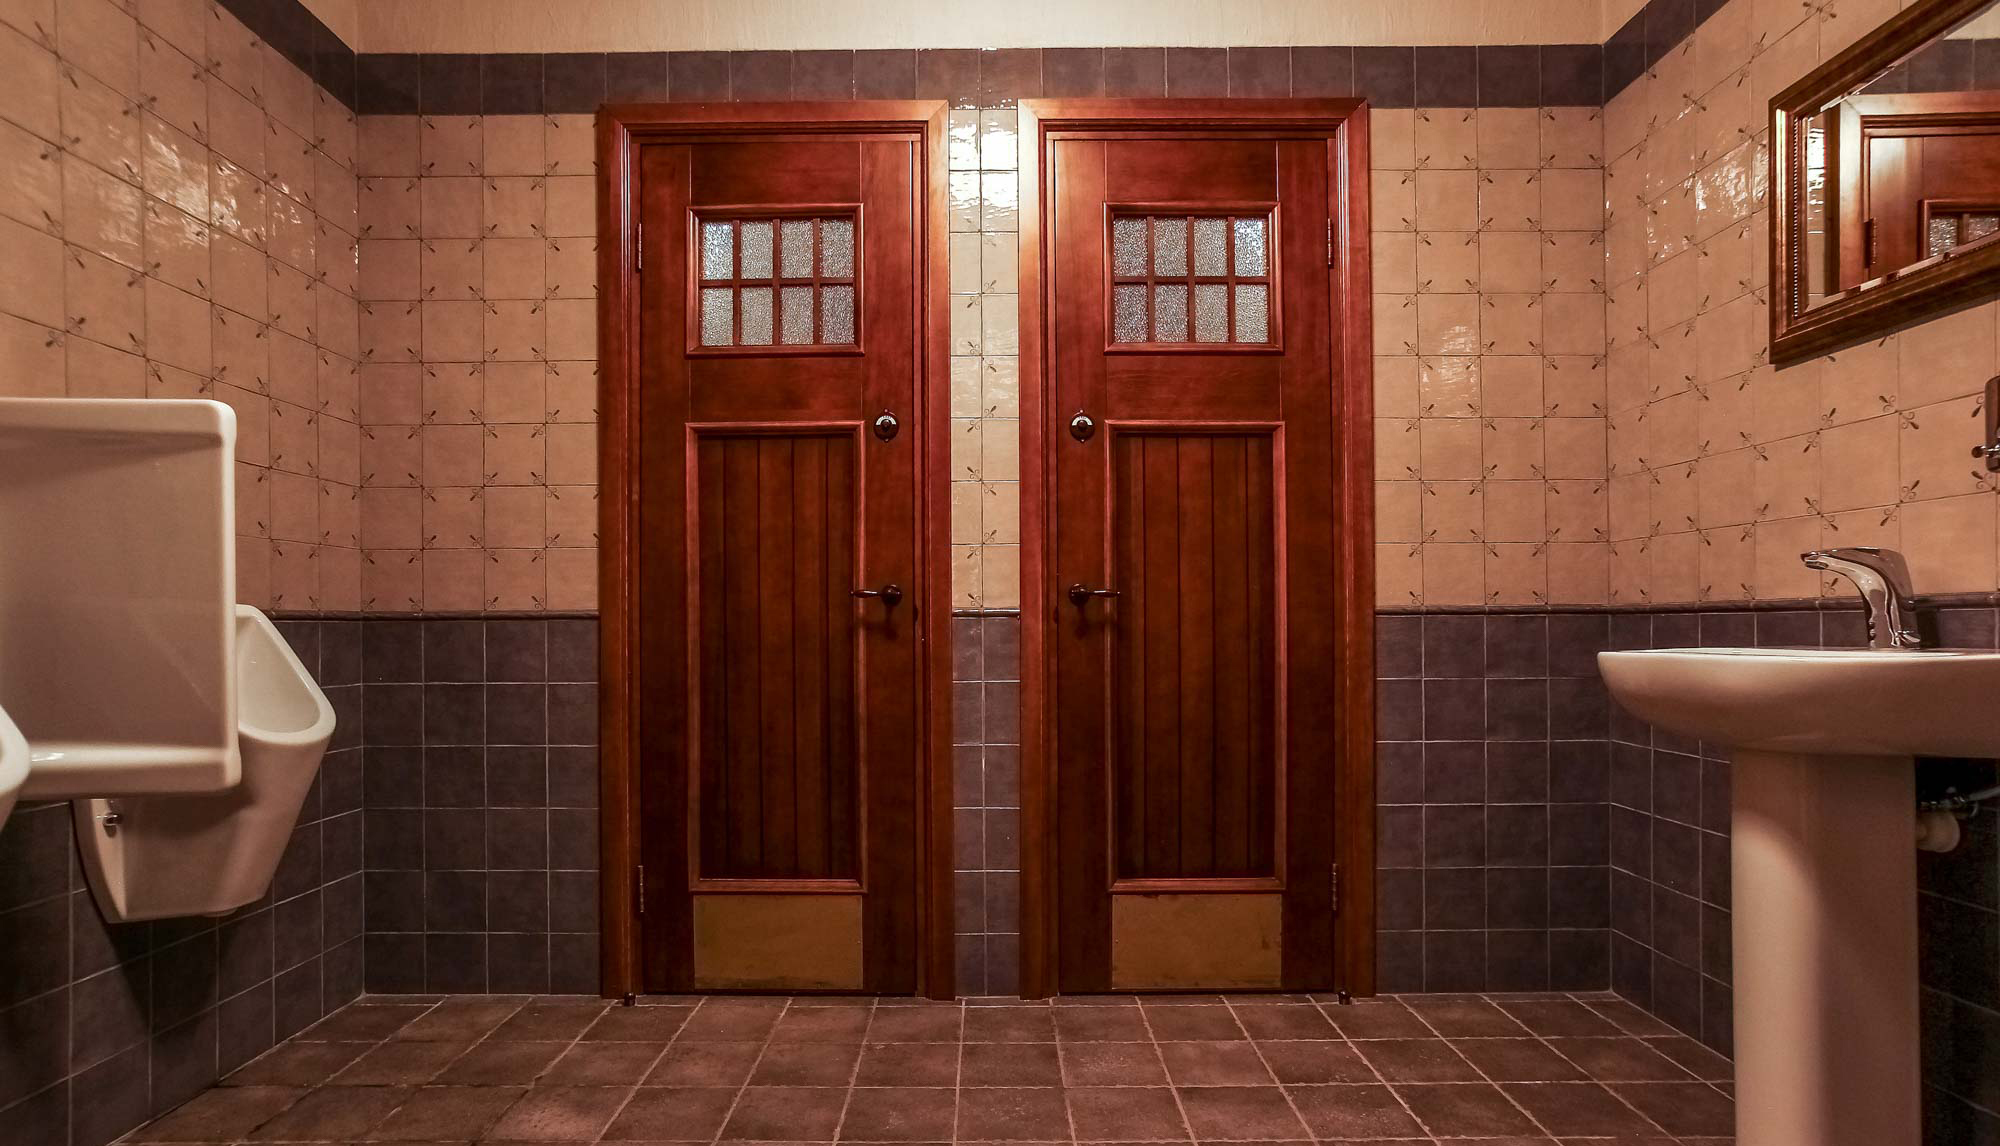 Двери В Ванную И Туалет Фото И Цены